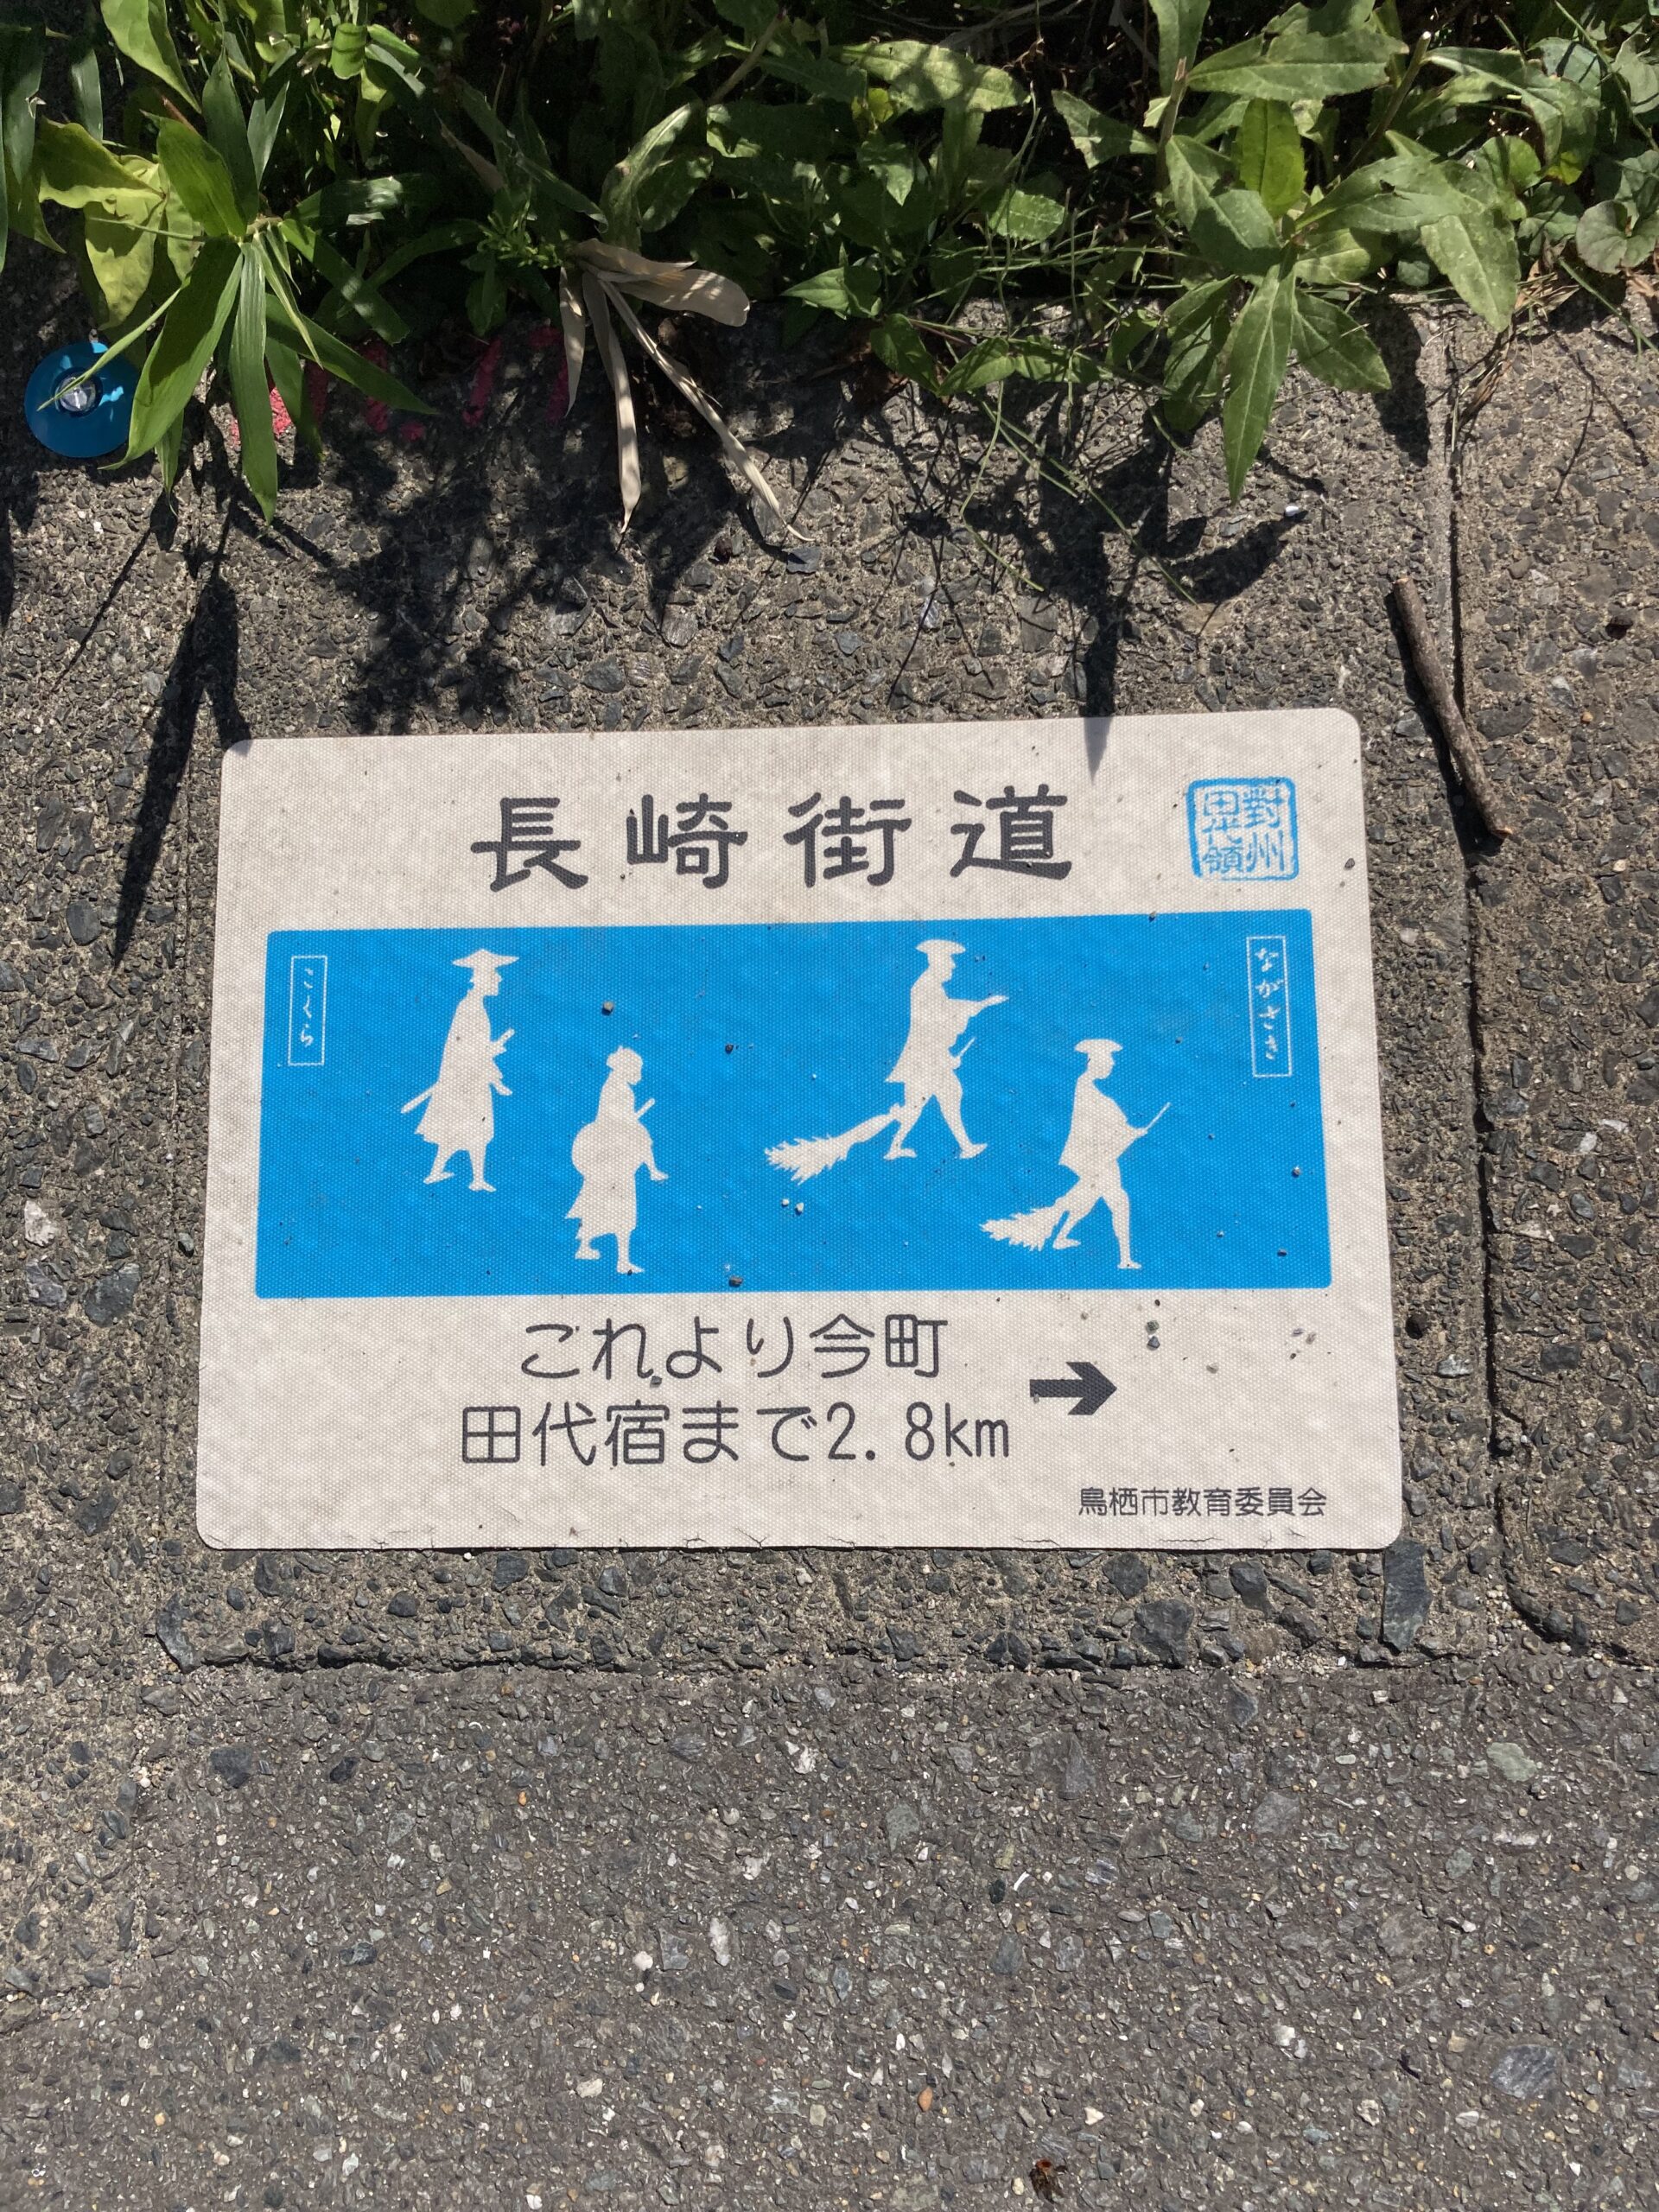 長崎街道路面標示